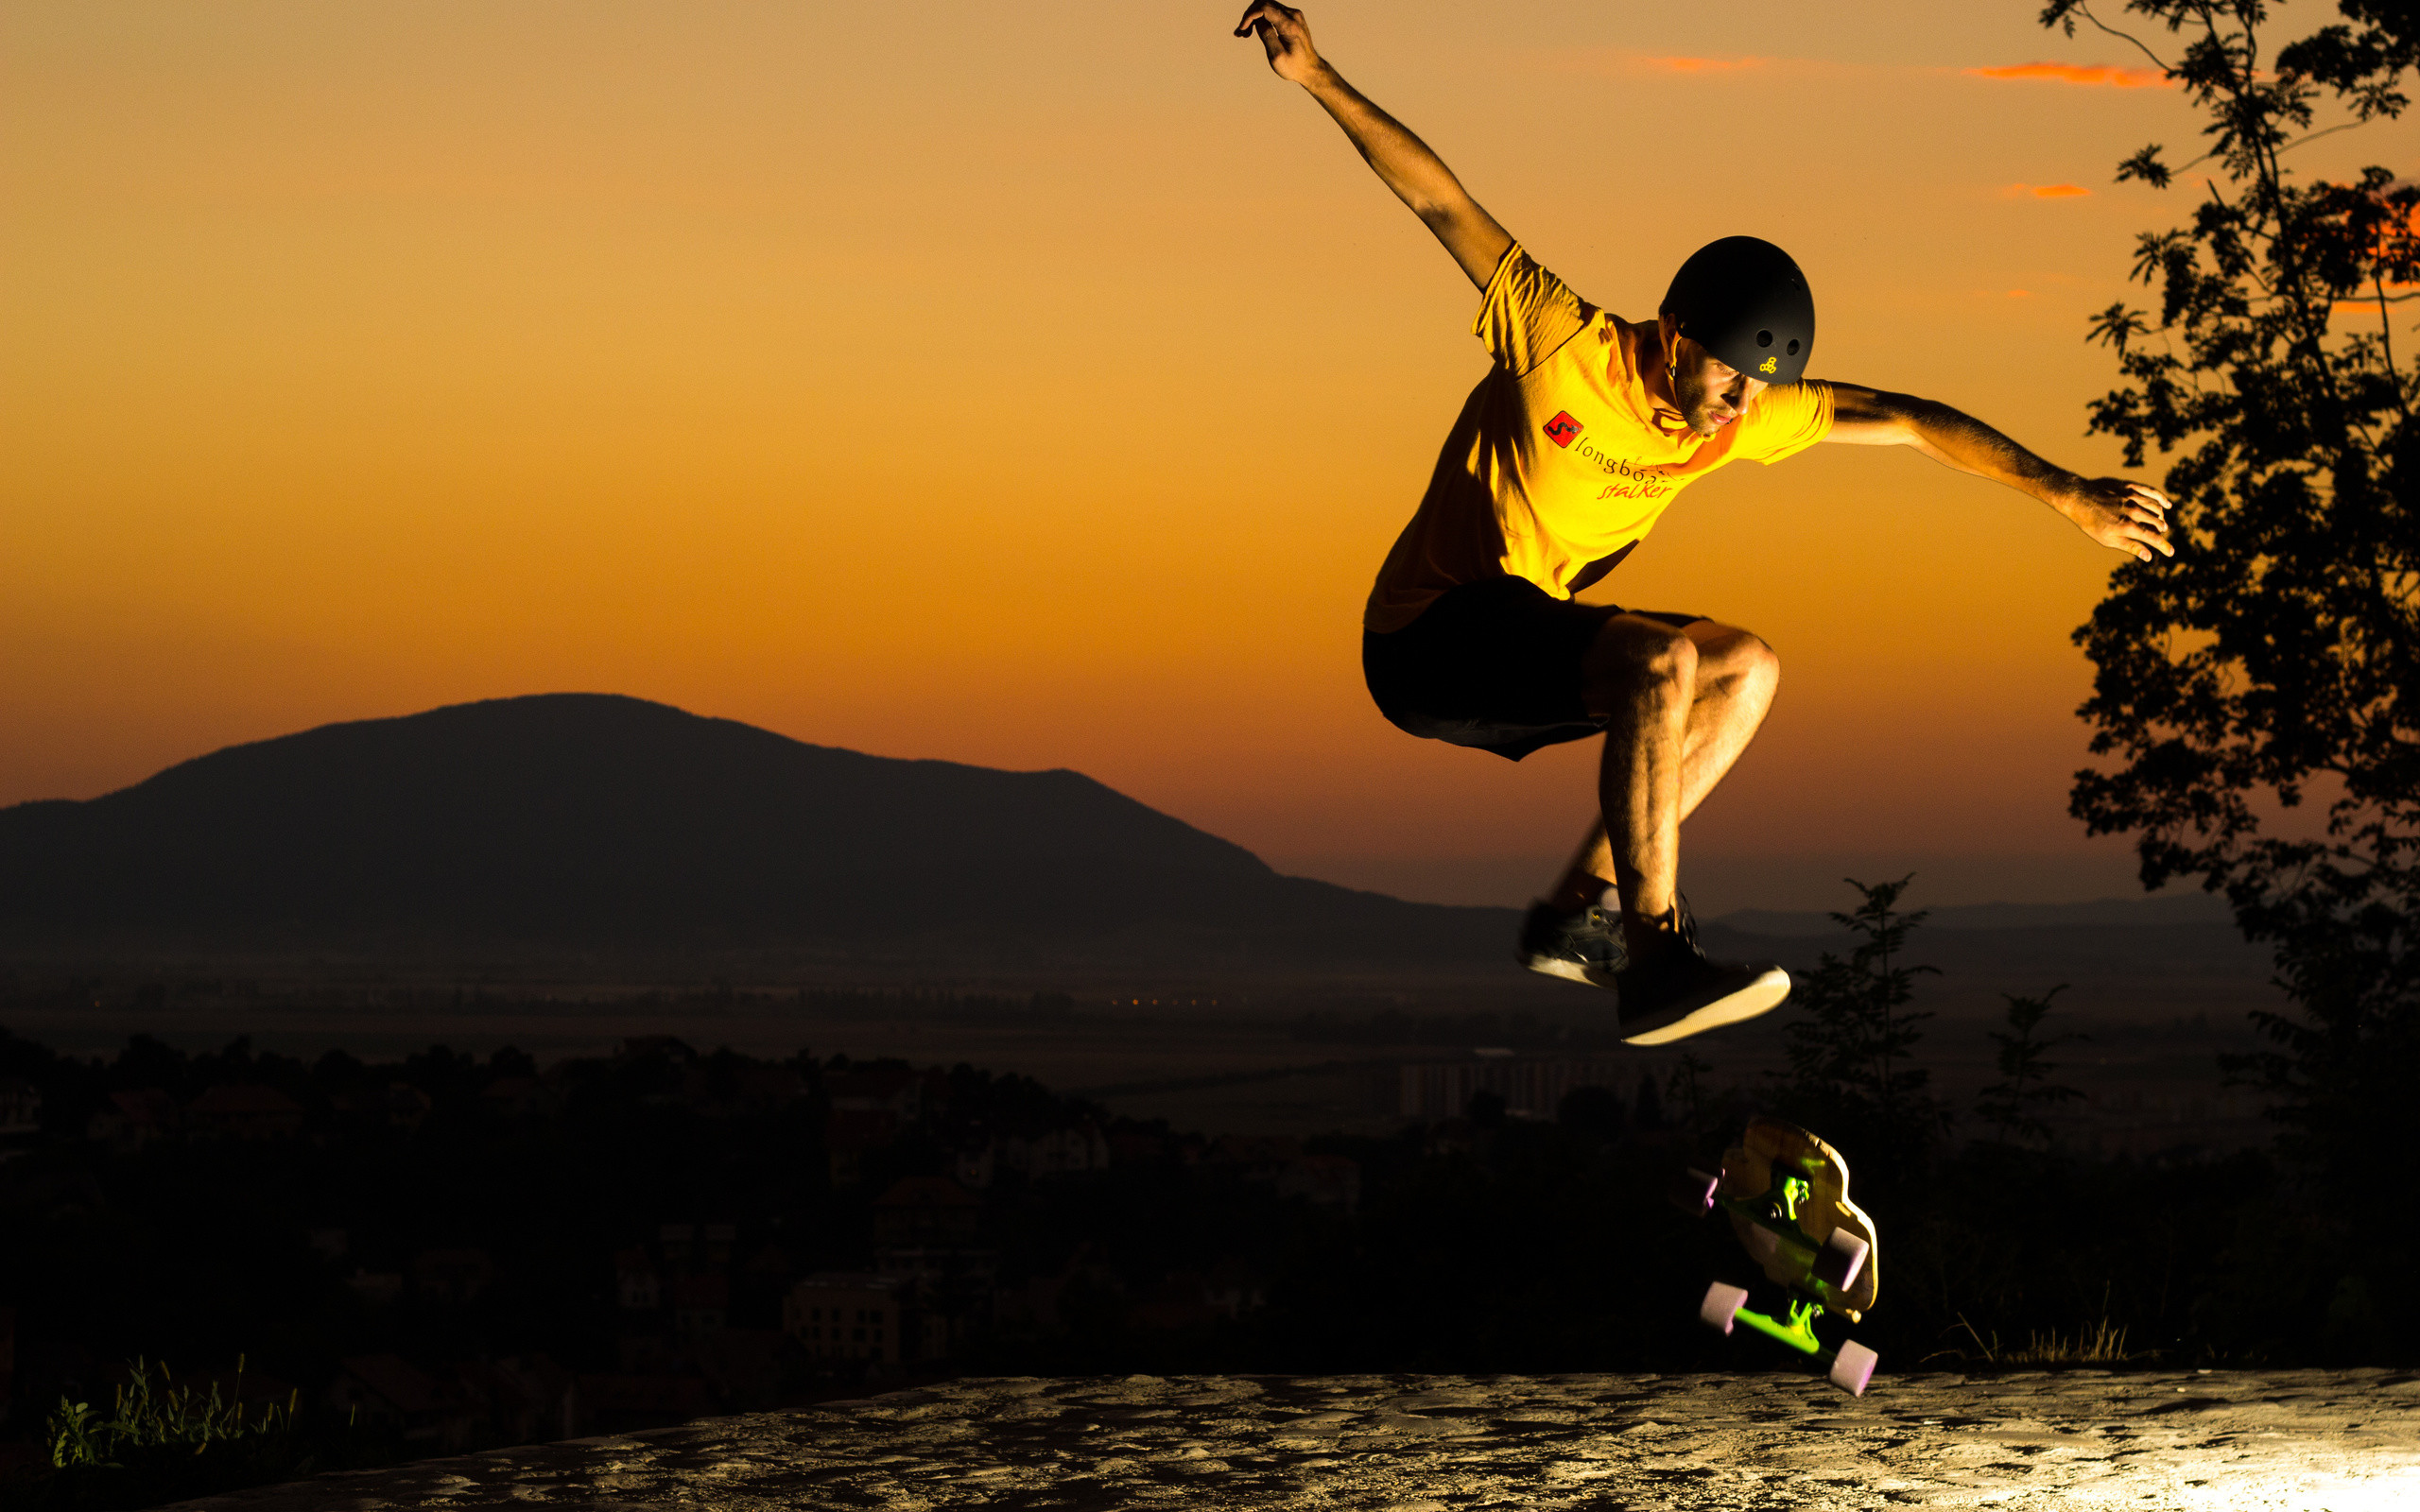 Jump sunset skate helmet man skateboard skateboarding wallpaper